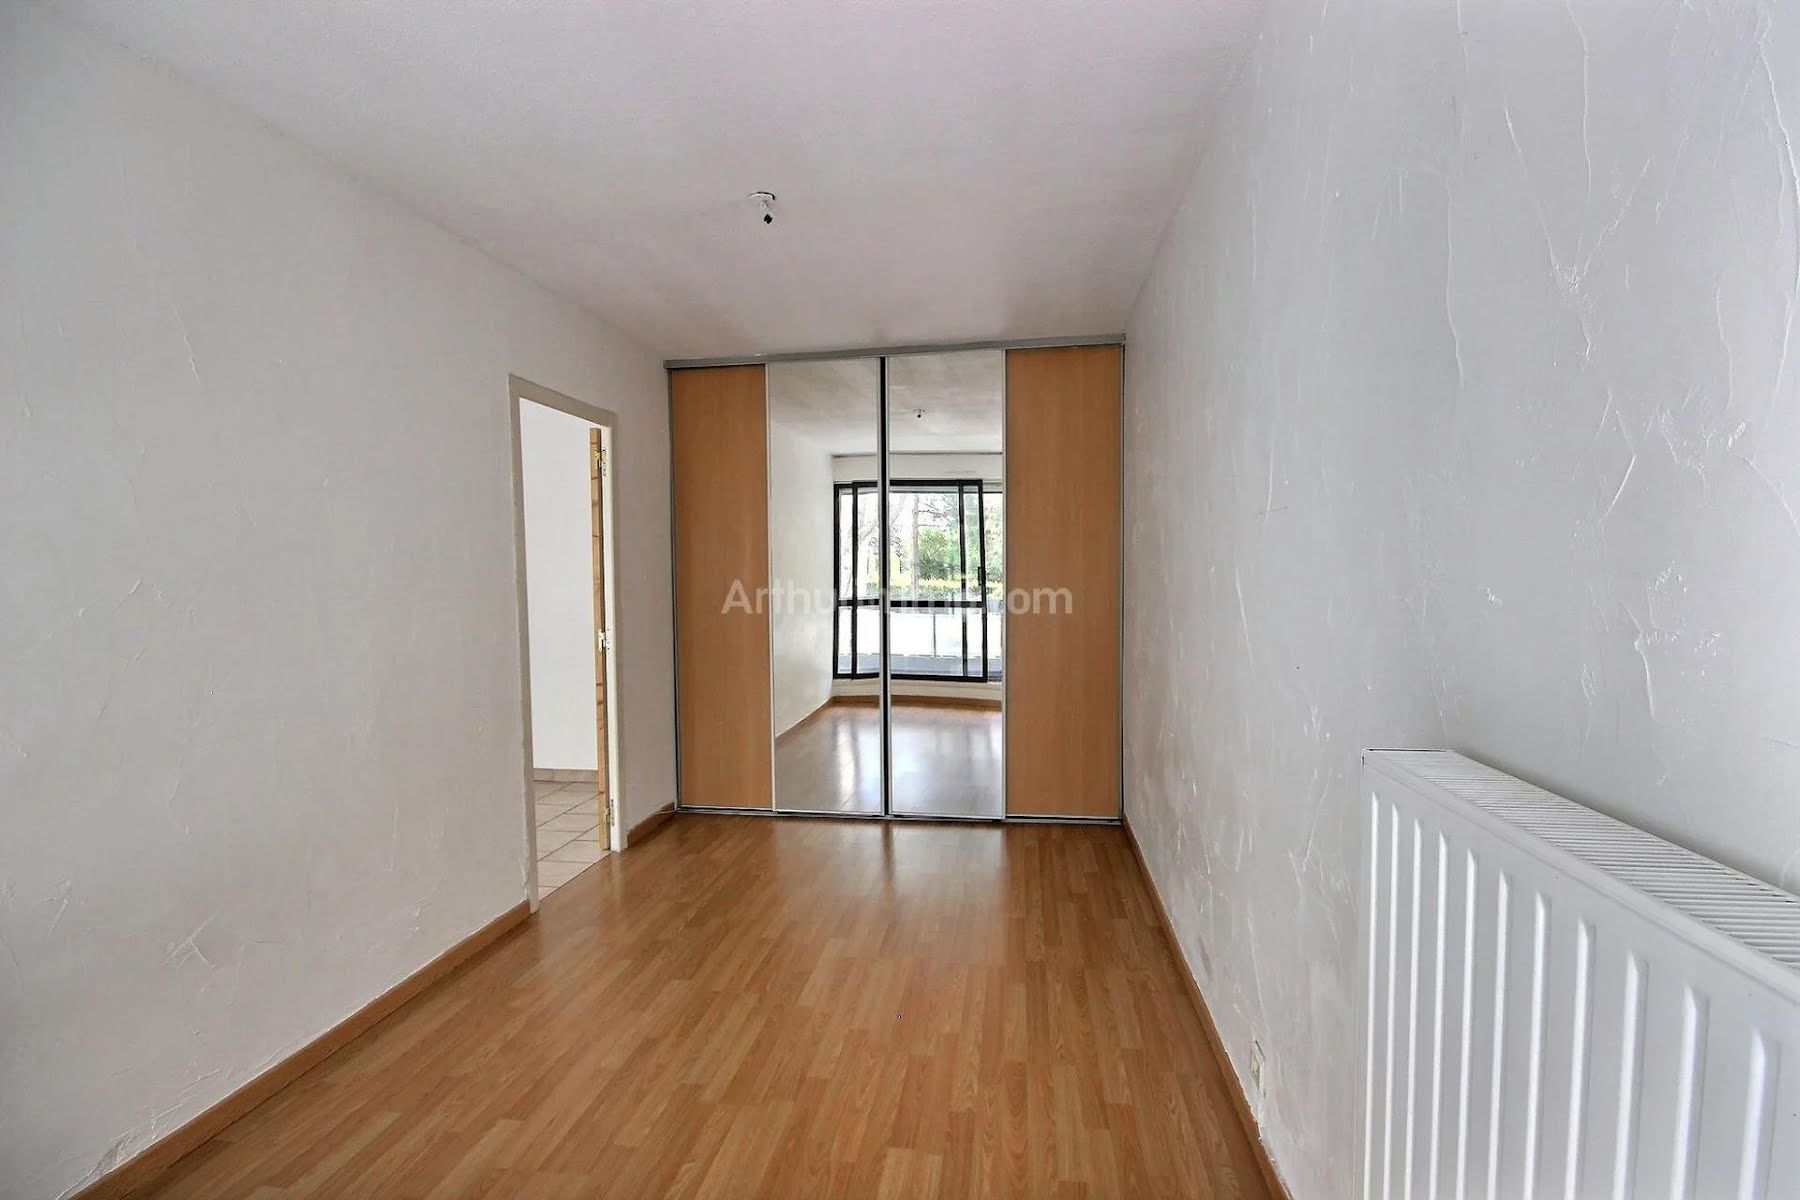 Location appartement 2 pièces 54,25 m2